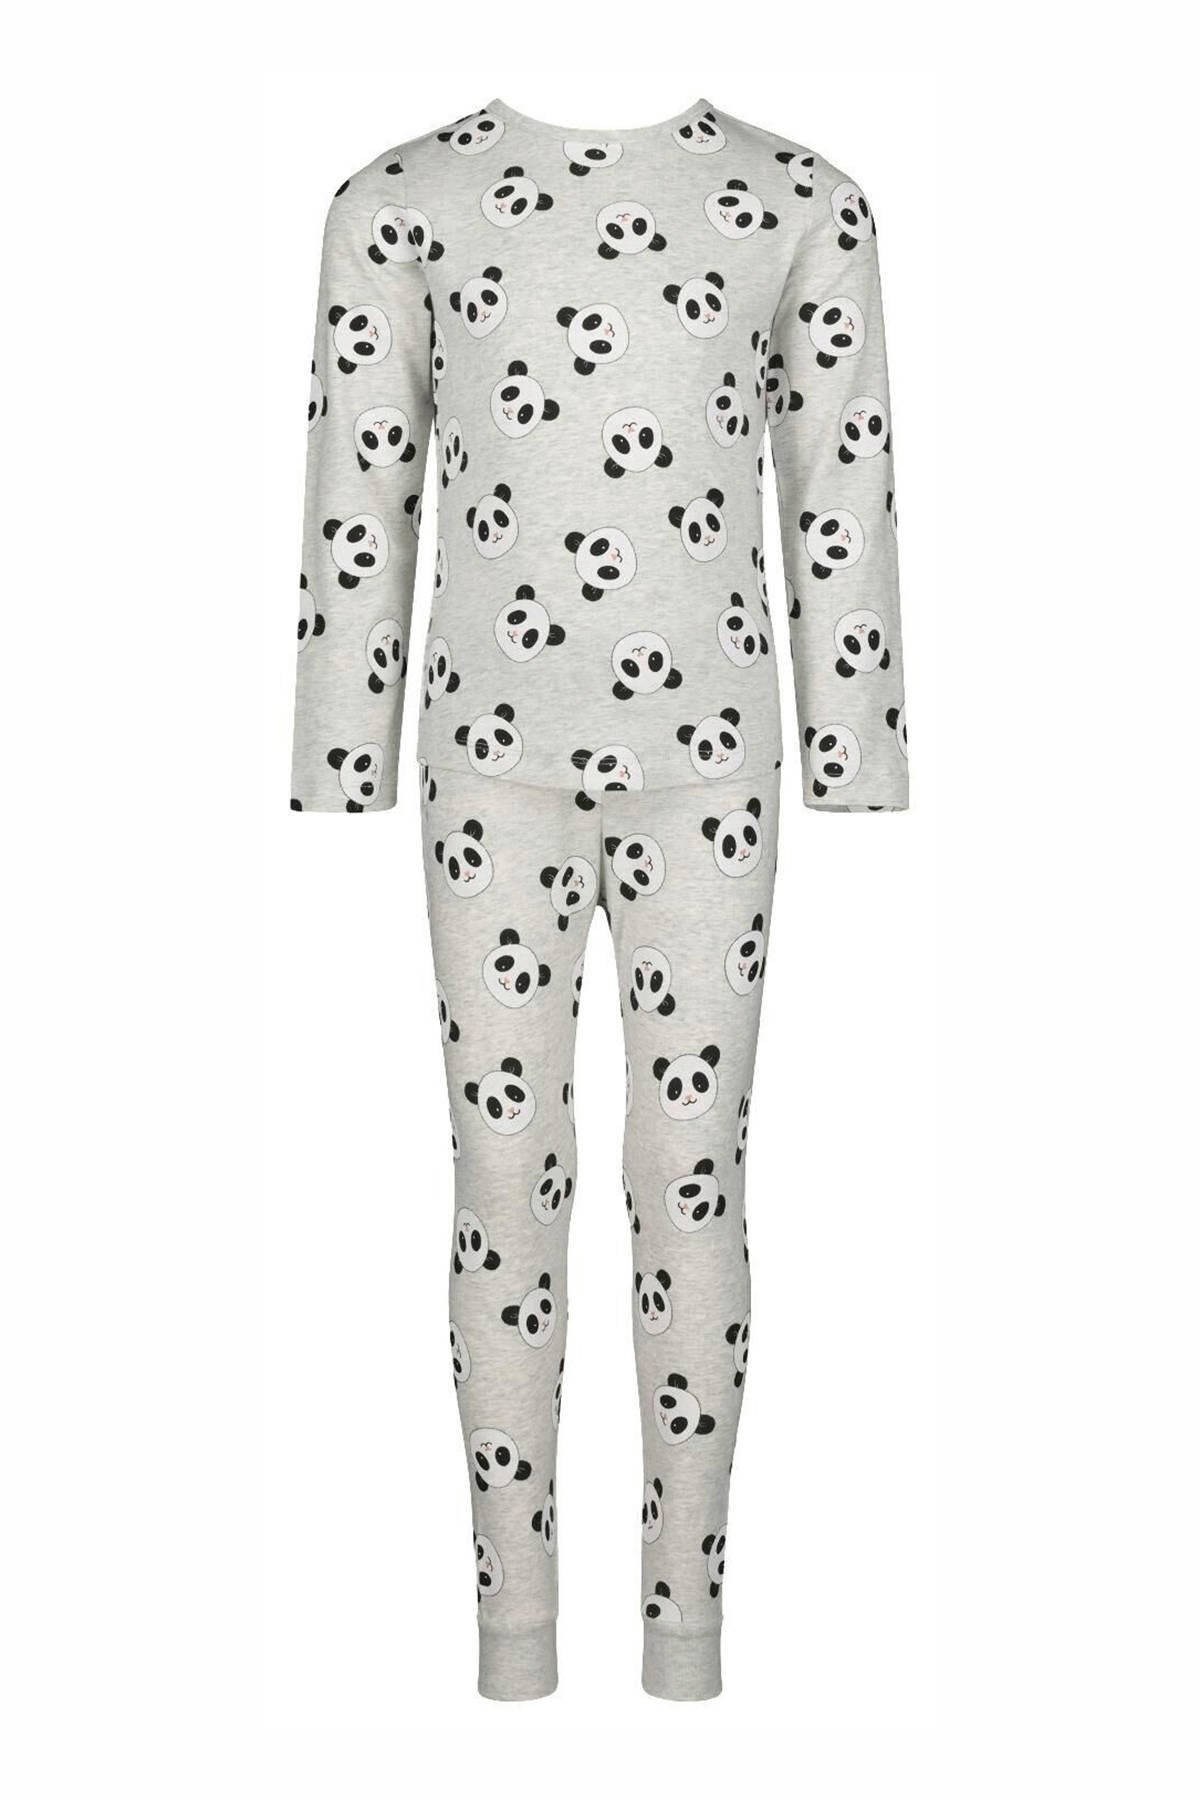 banner verkeer sigaret HEMA pyjama panda grijs | wehkamp